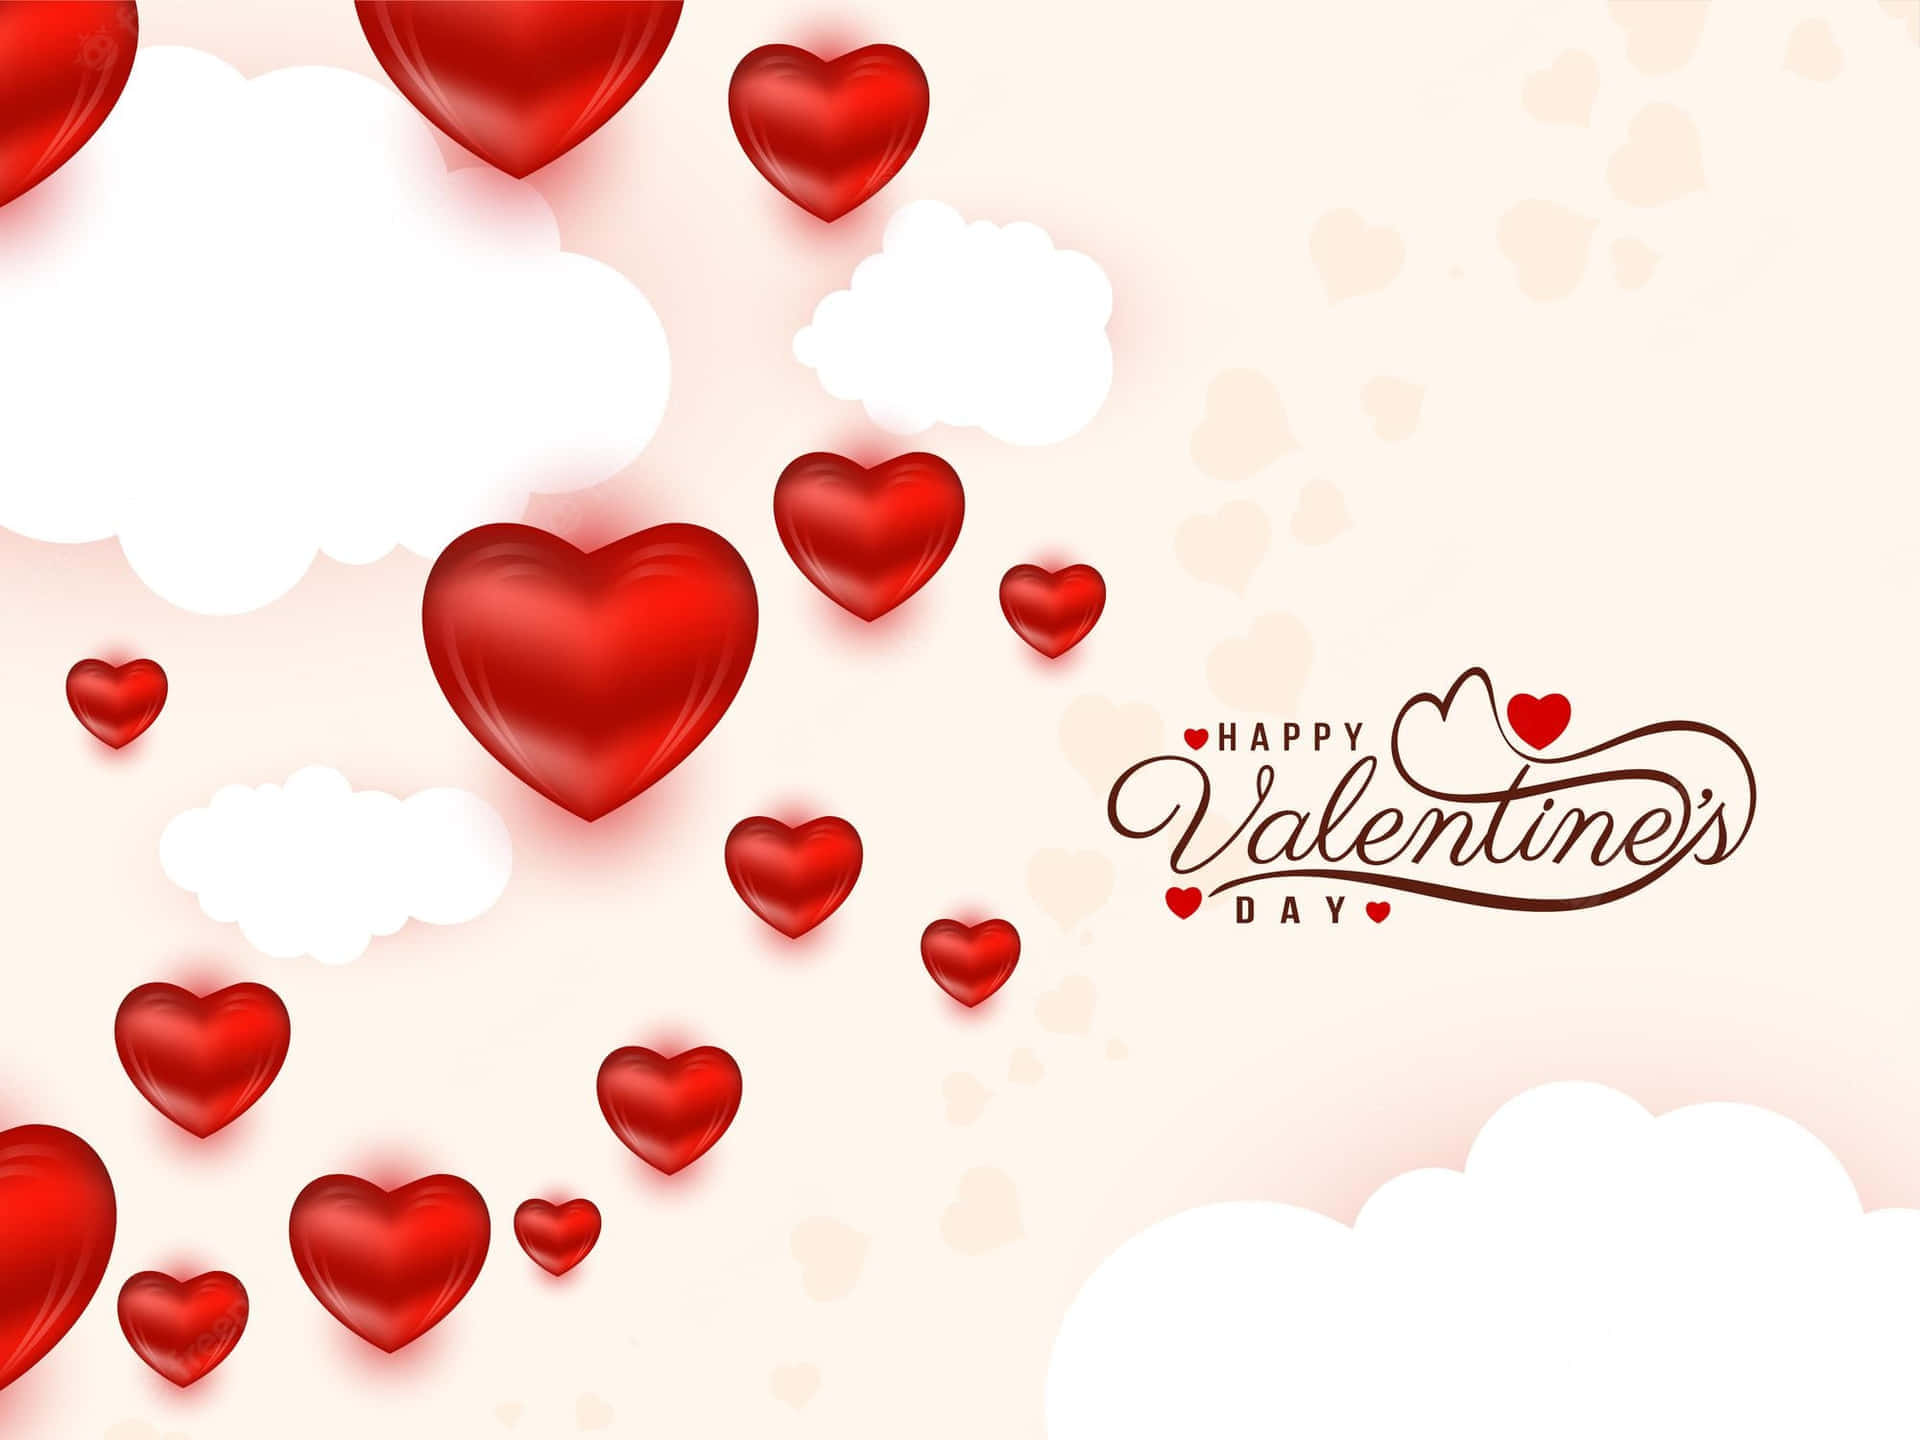 Fondoromántico De Feliz Día De San Valentín Con Corazones Y Amor.